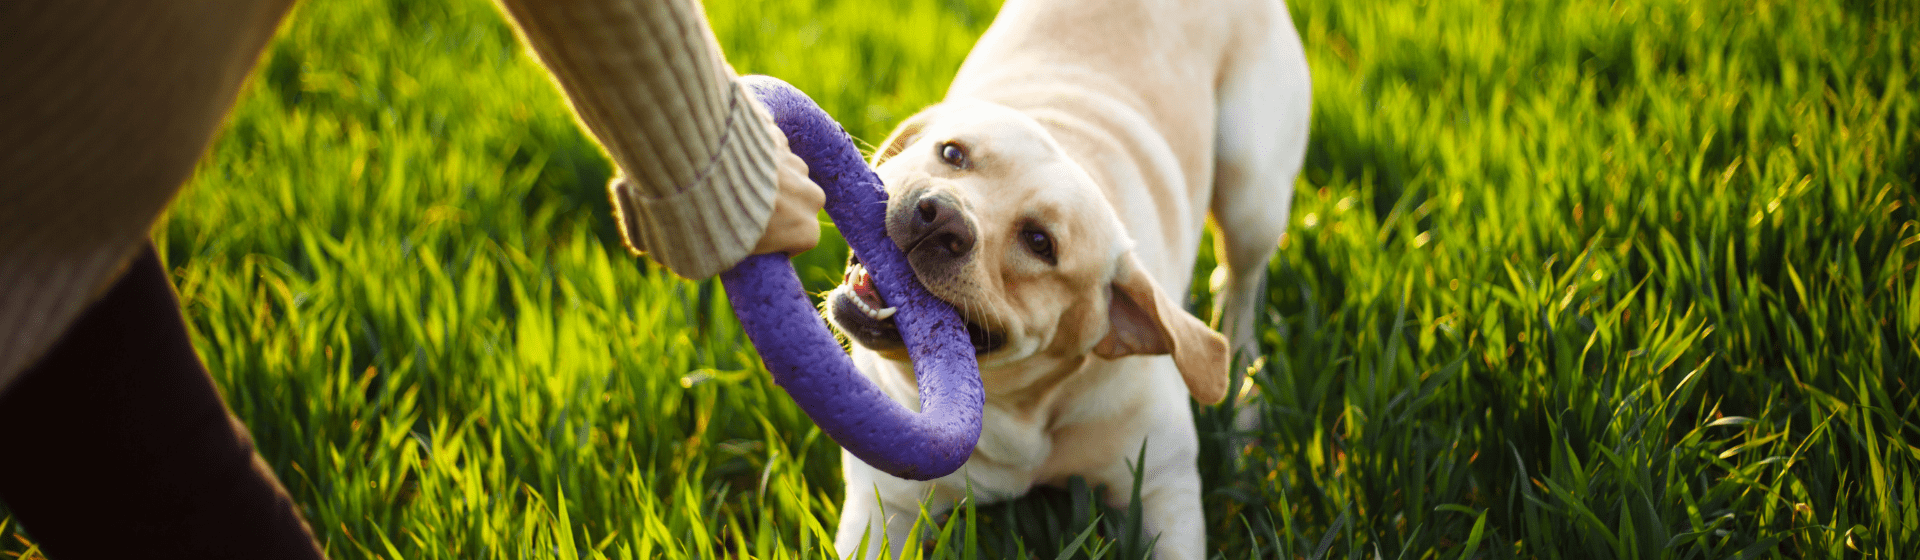 Brinquedo para cachorro: qual é o melhor modelo?